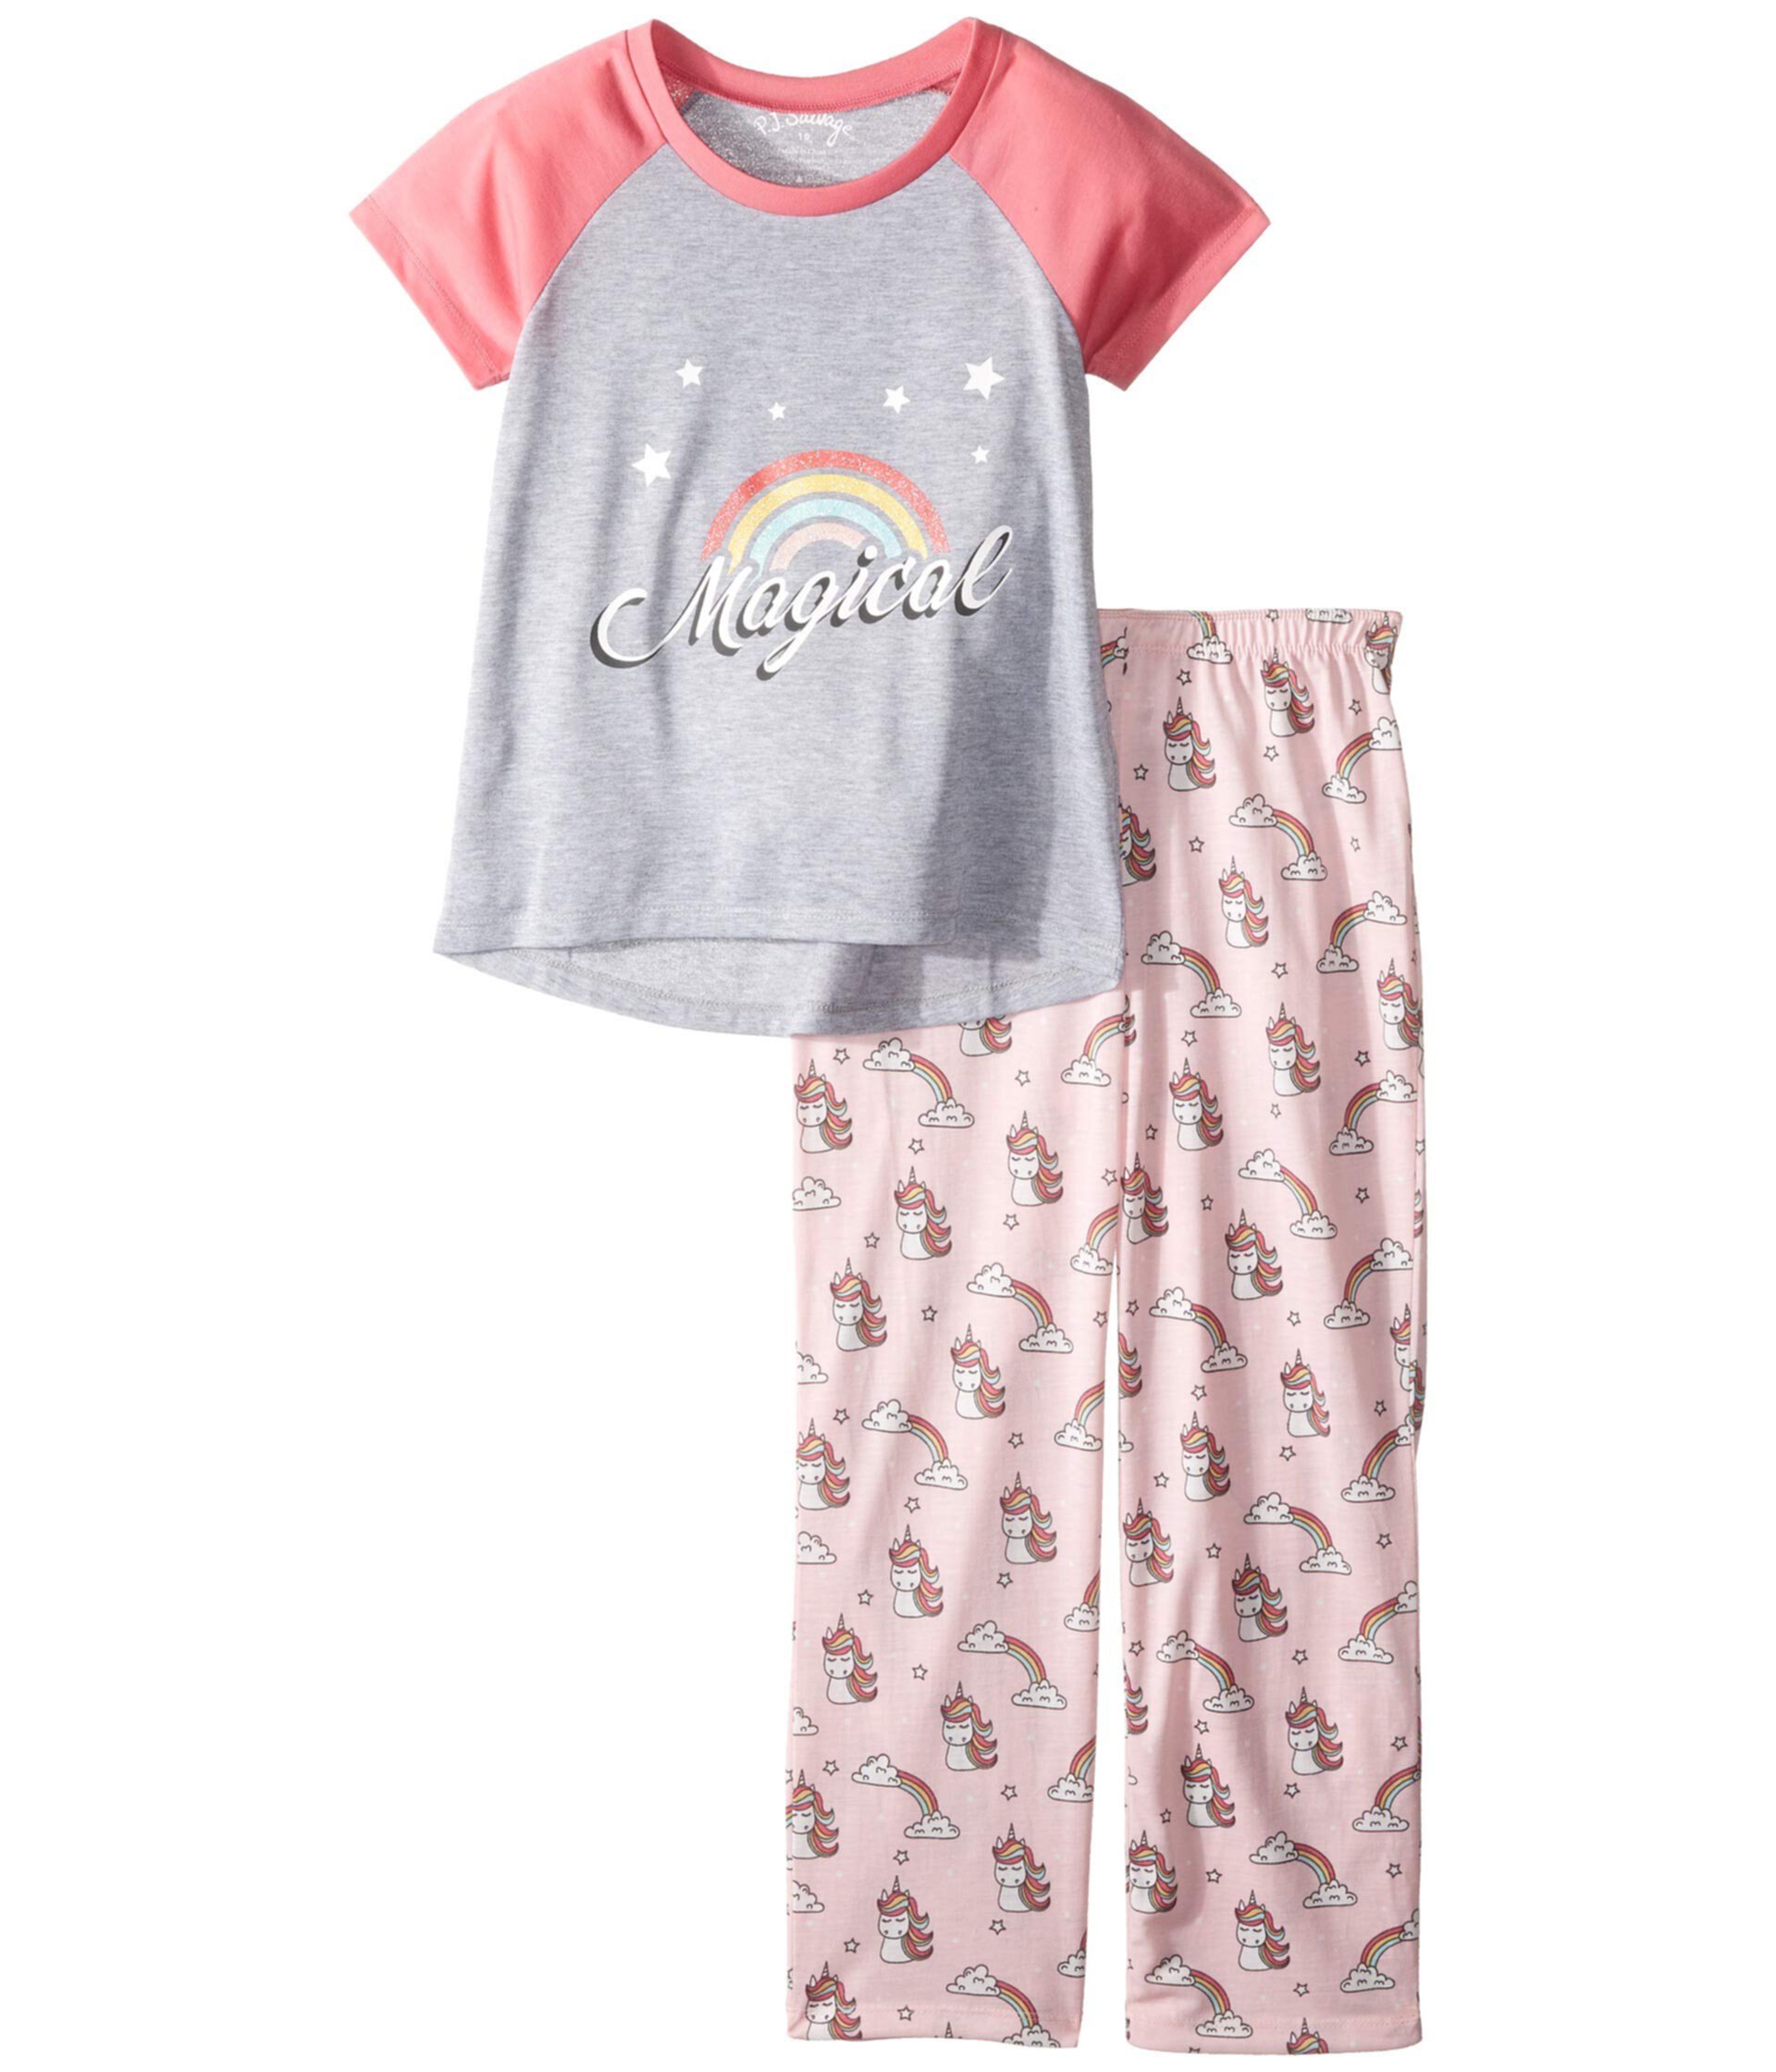 Пижамный комплект Unicorn Spirit (для малышей / маленьких детей / детей старшего возраста) P.J. Salvage Kids